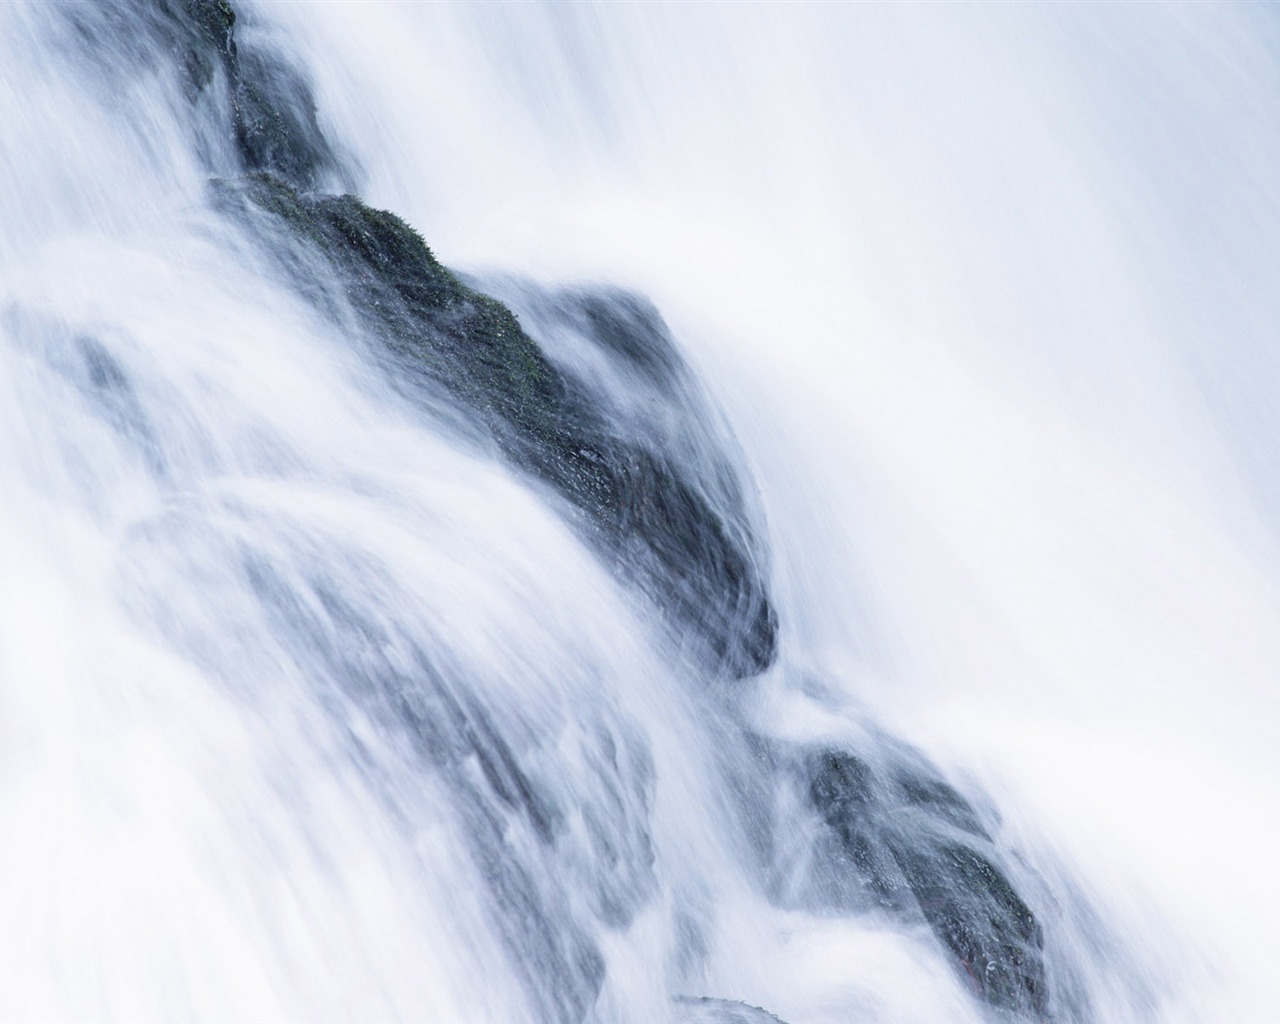 Waterfall flux HD Wallpapers #32 - 1280x1024